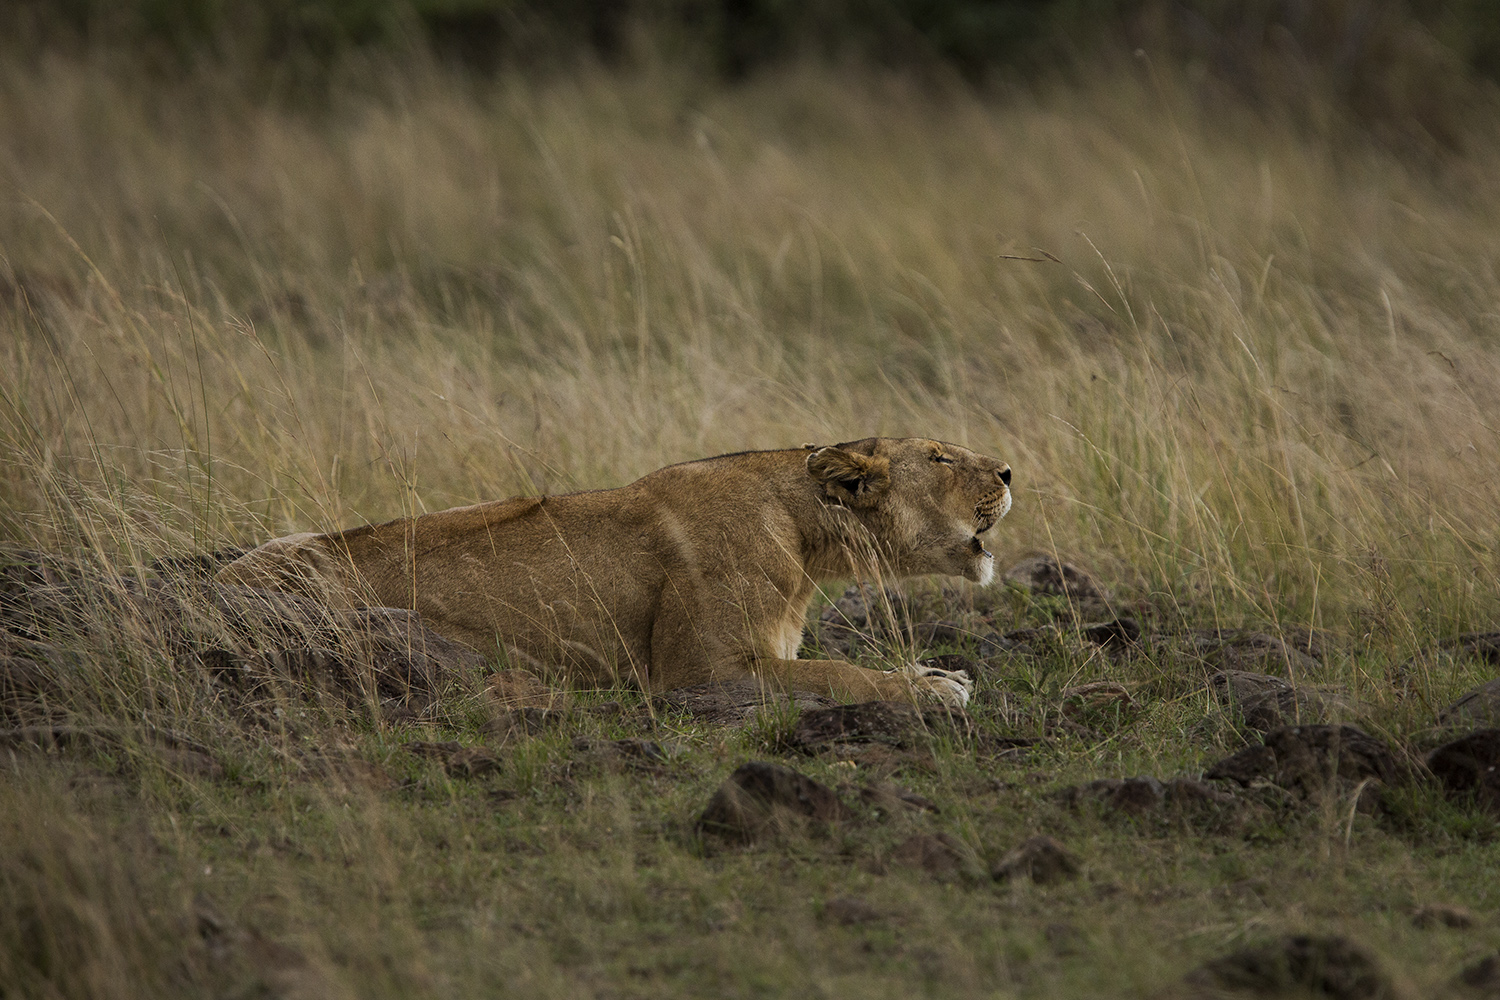 Lioness roar